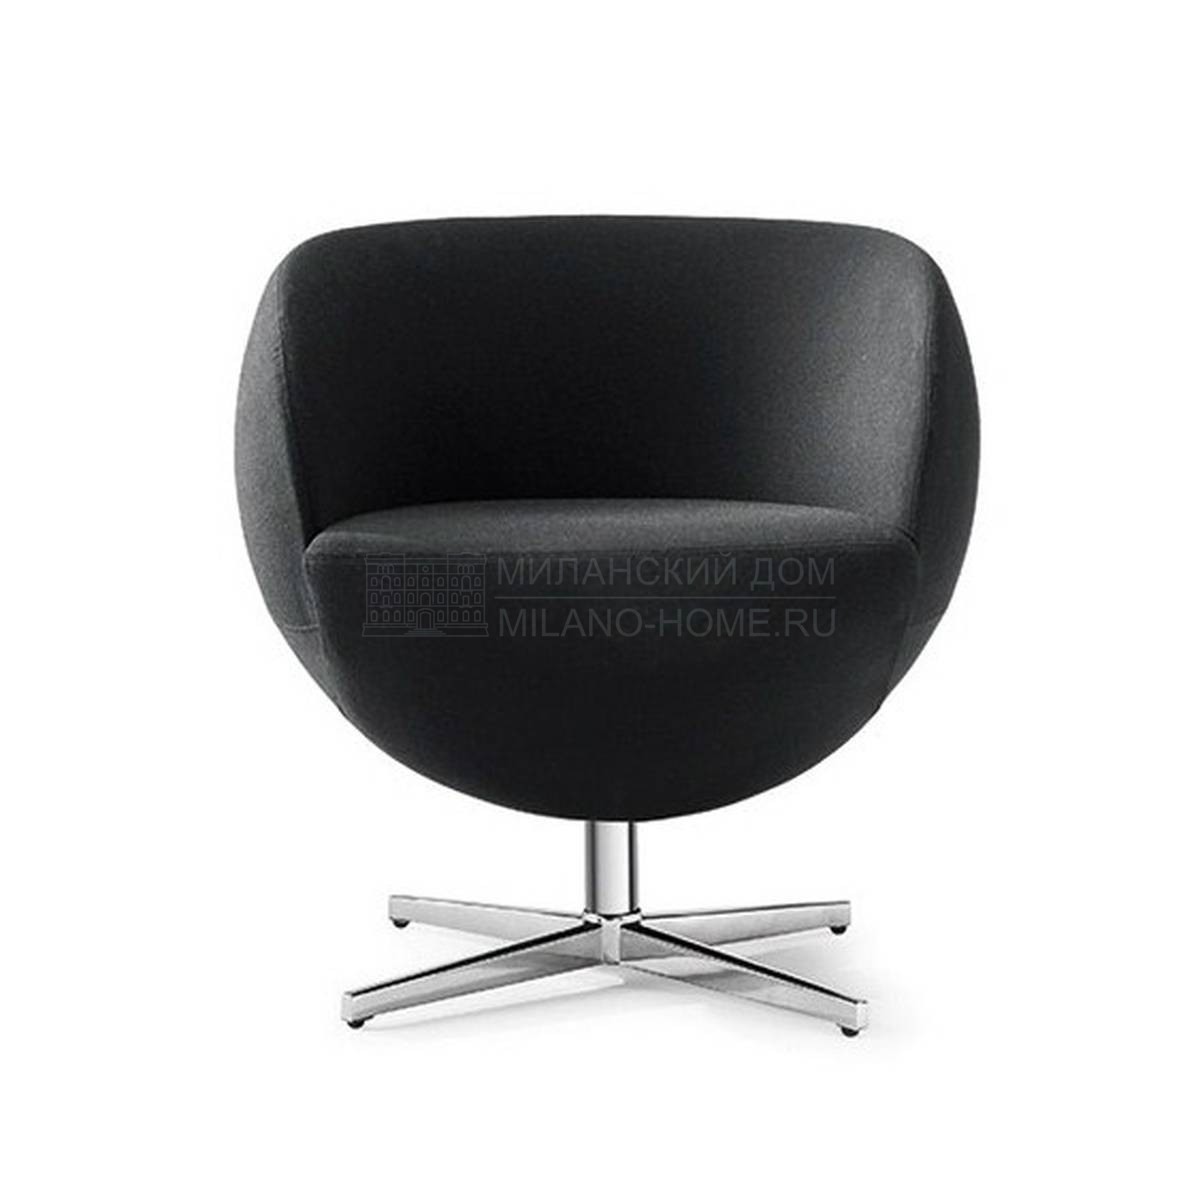 Круглое кресло Matchball из Италии фабрики TONON